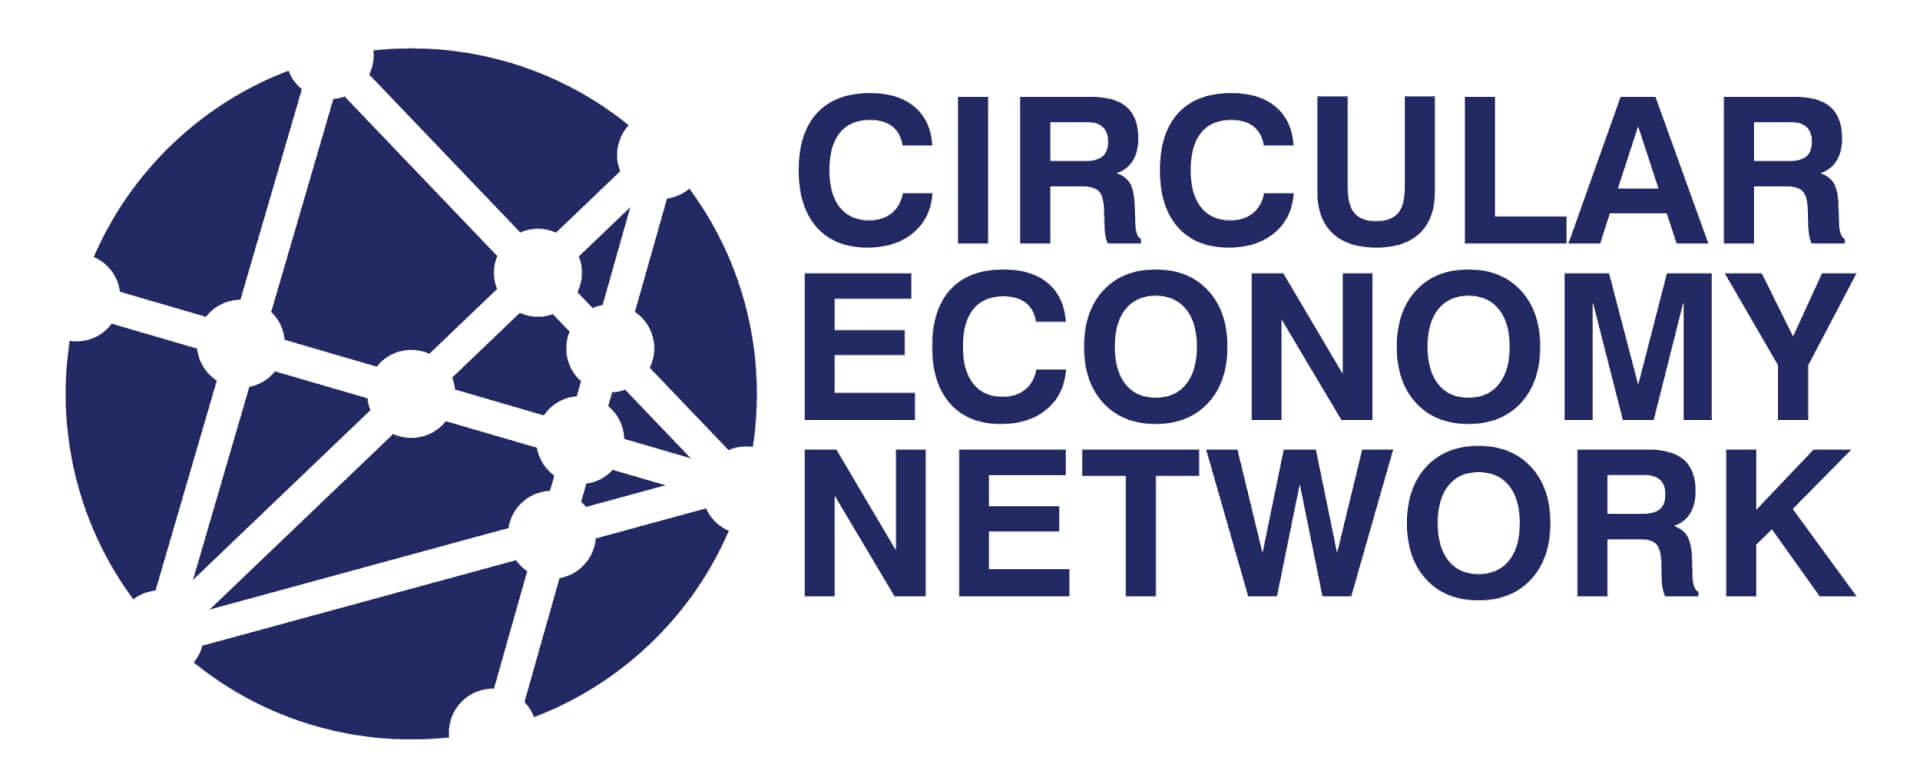 WasteAid Circular Economy Network